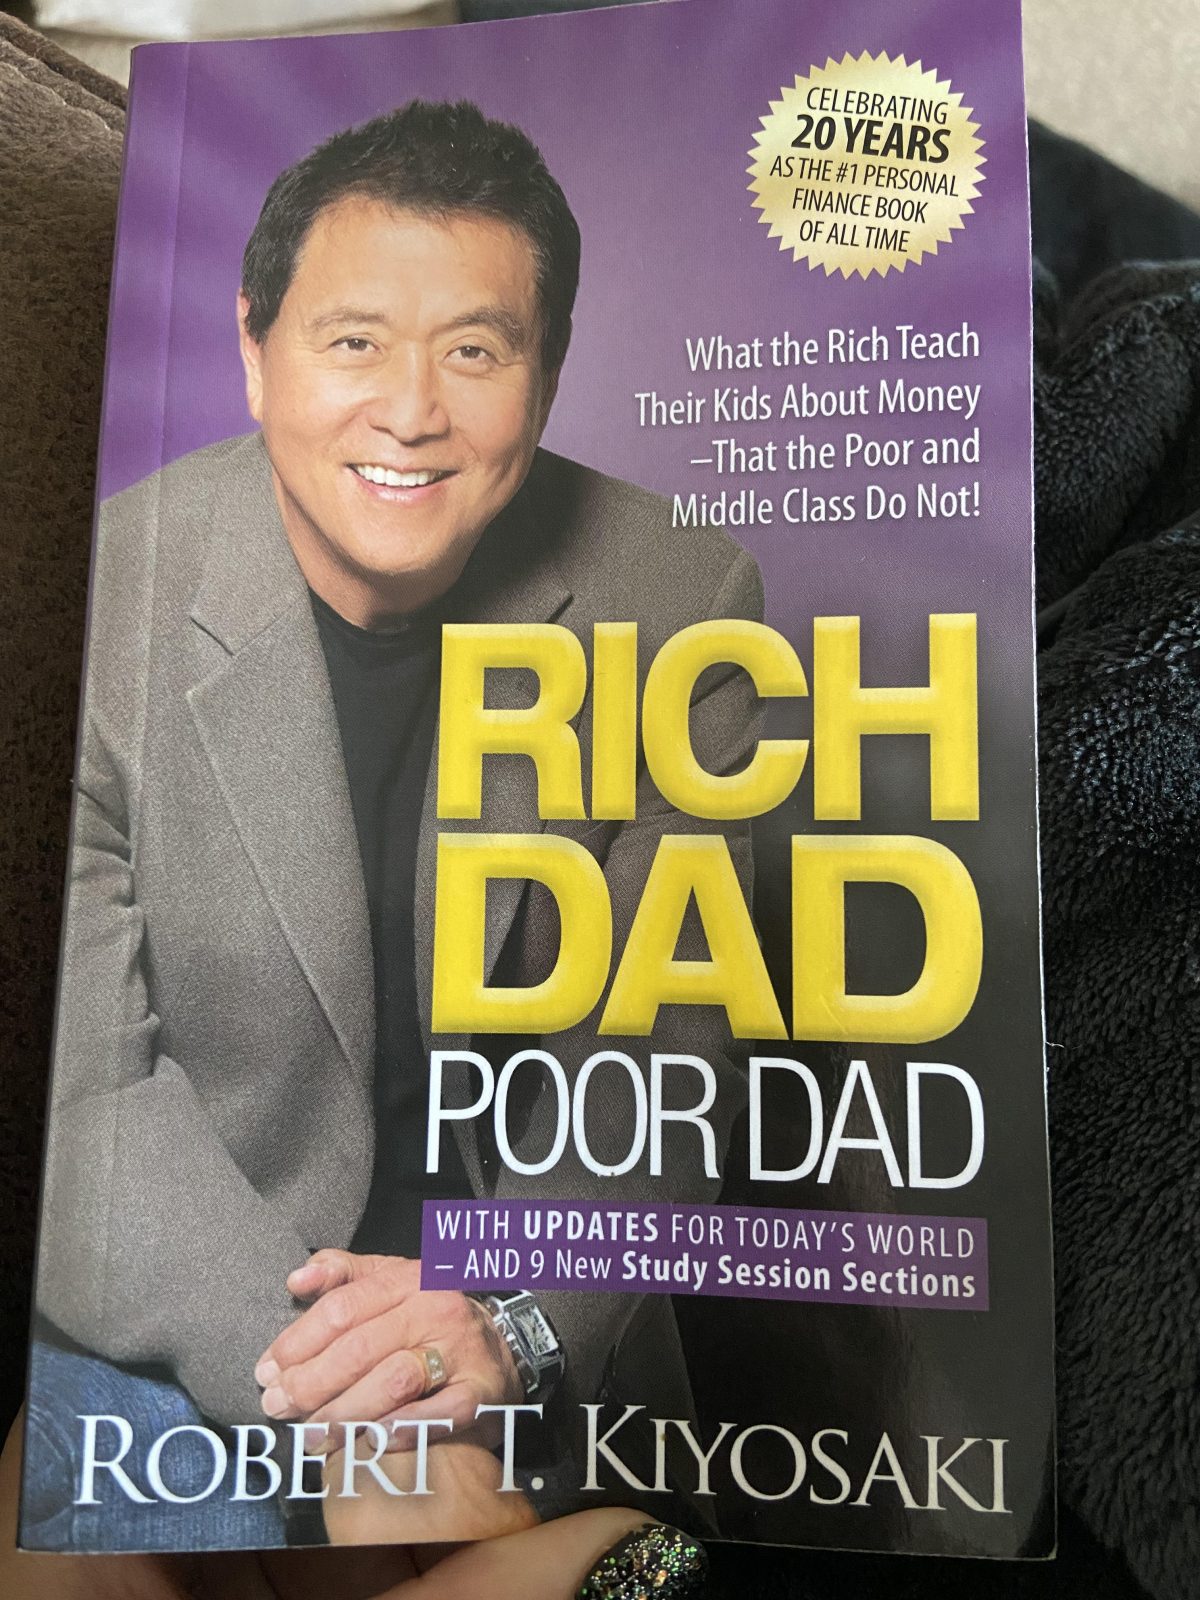 Rich dad, poor dad book